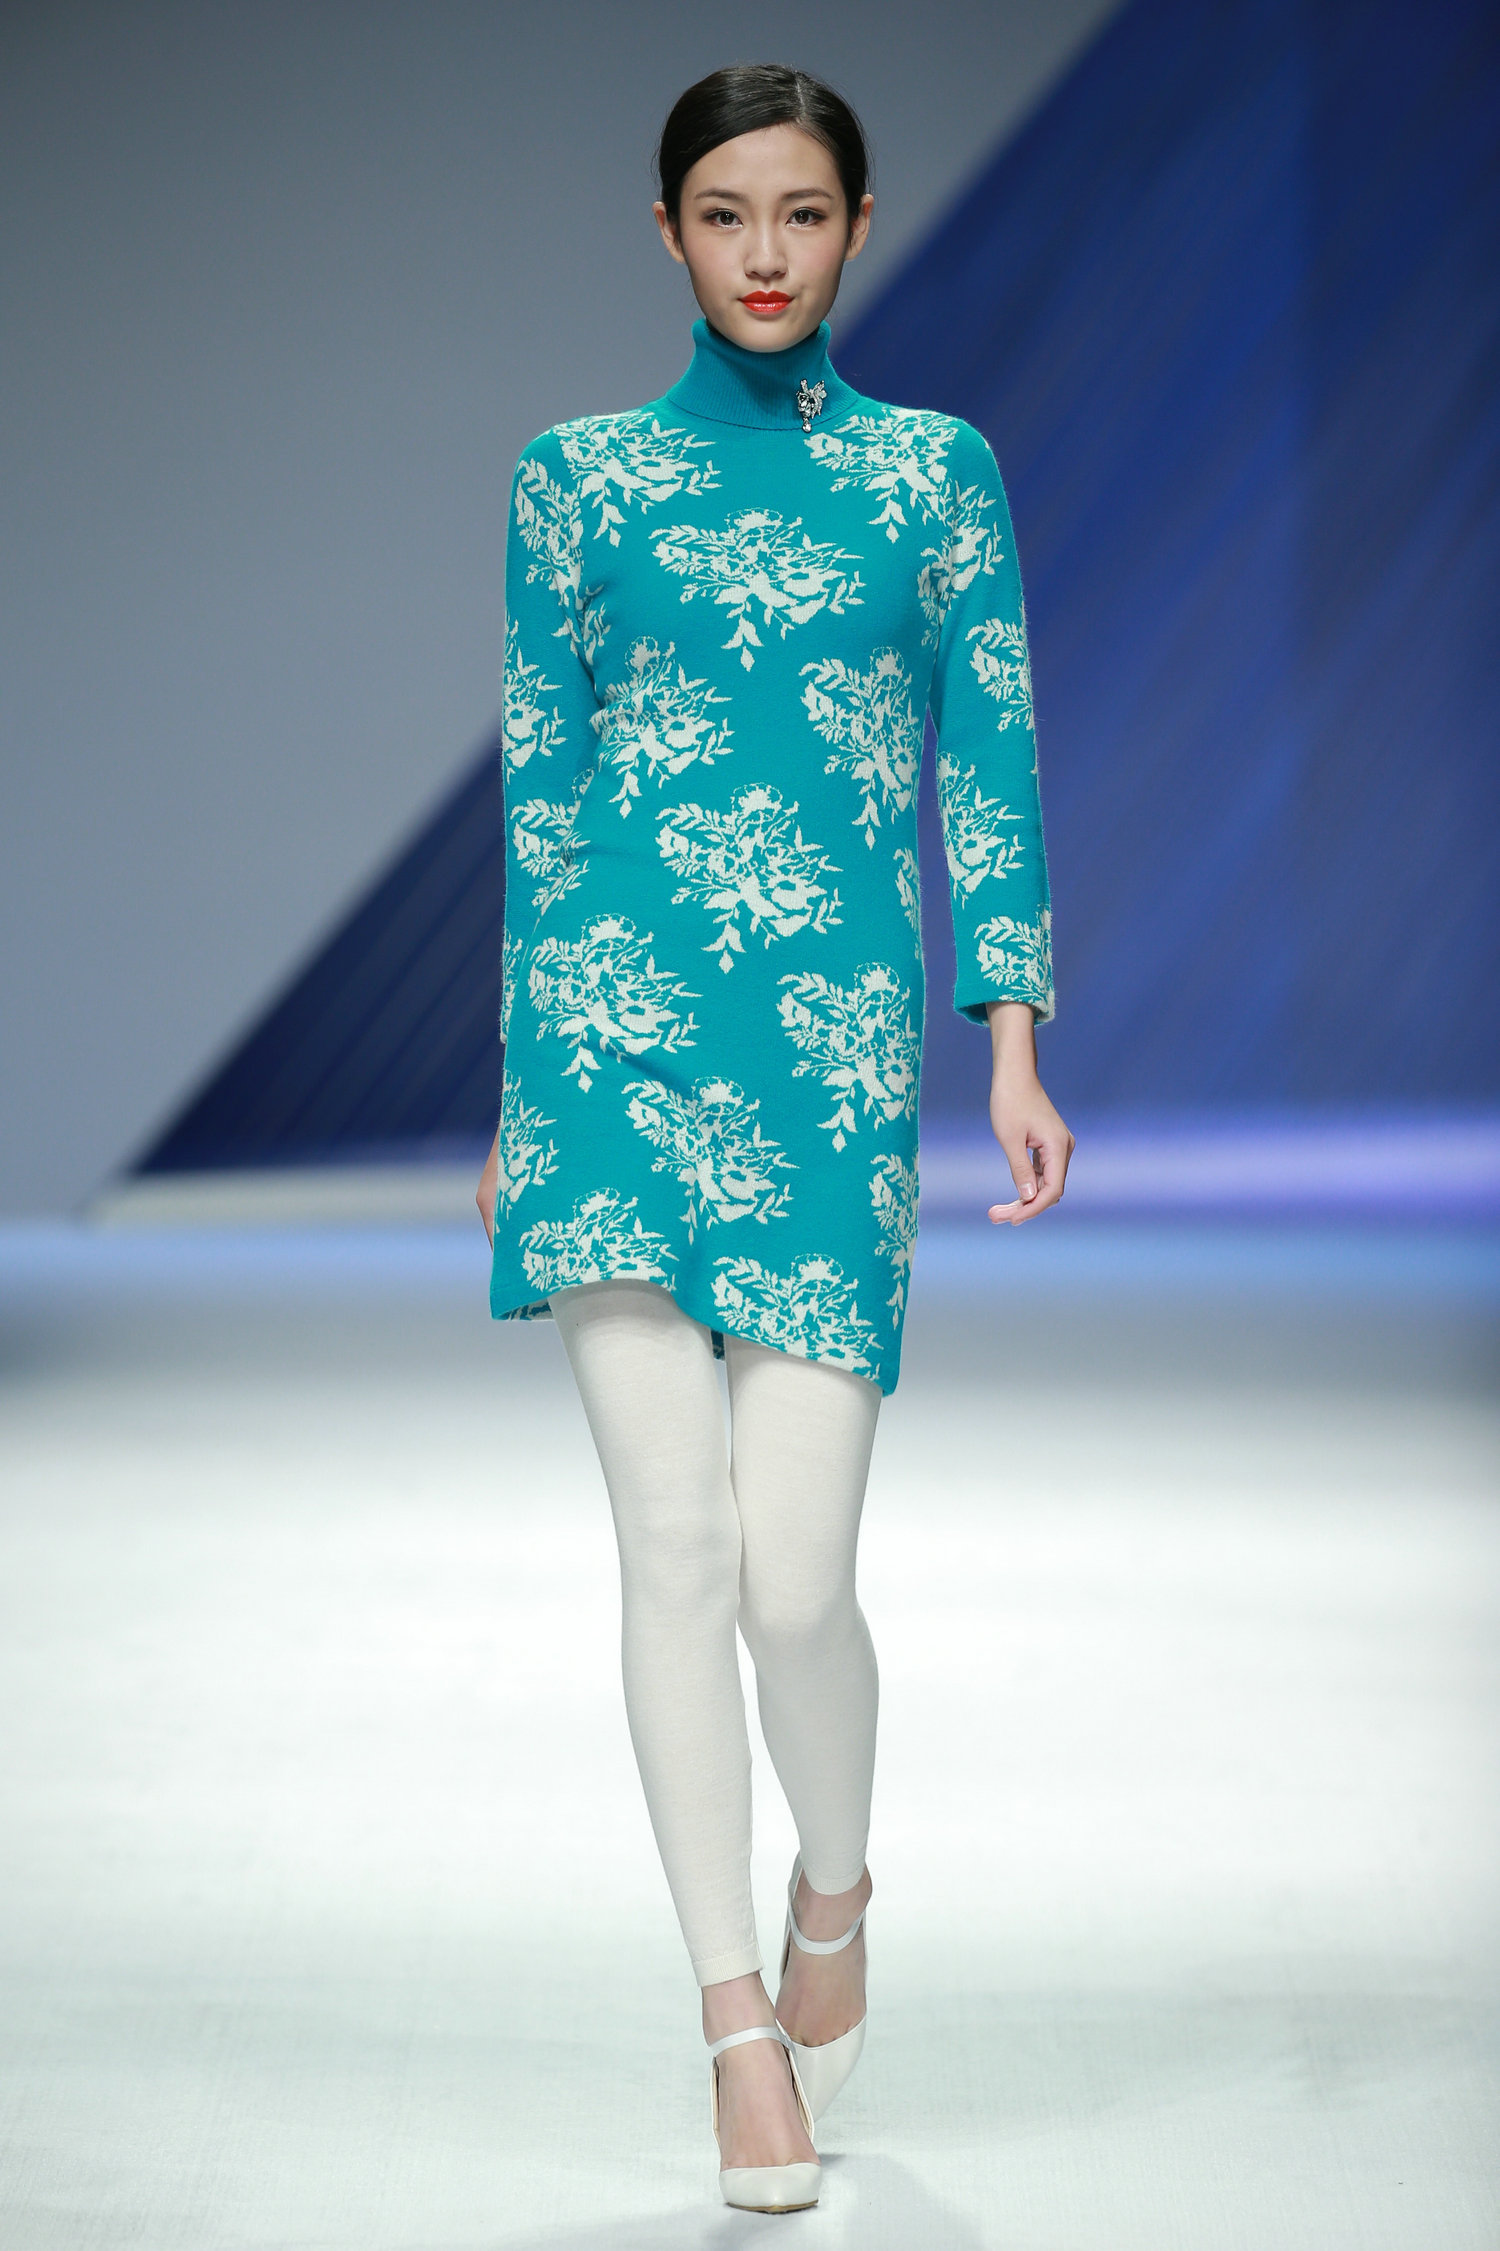 2016春夏系列中国国际时装周 蕾沃尔·庄淦然时装发布